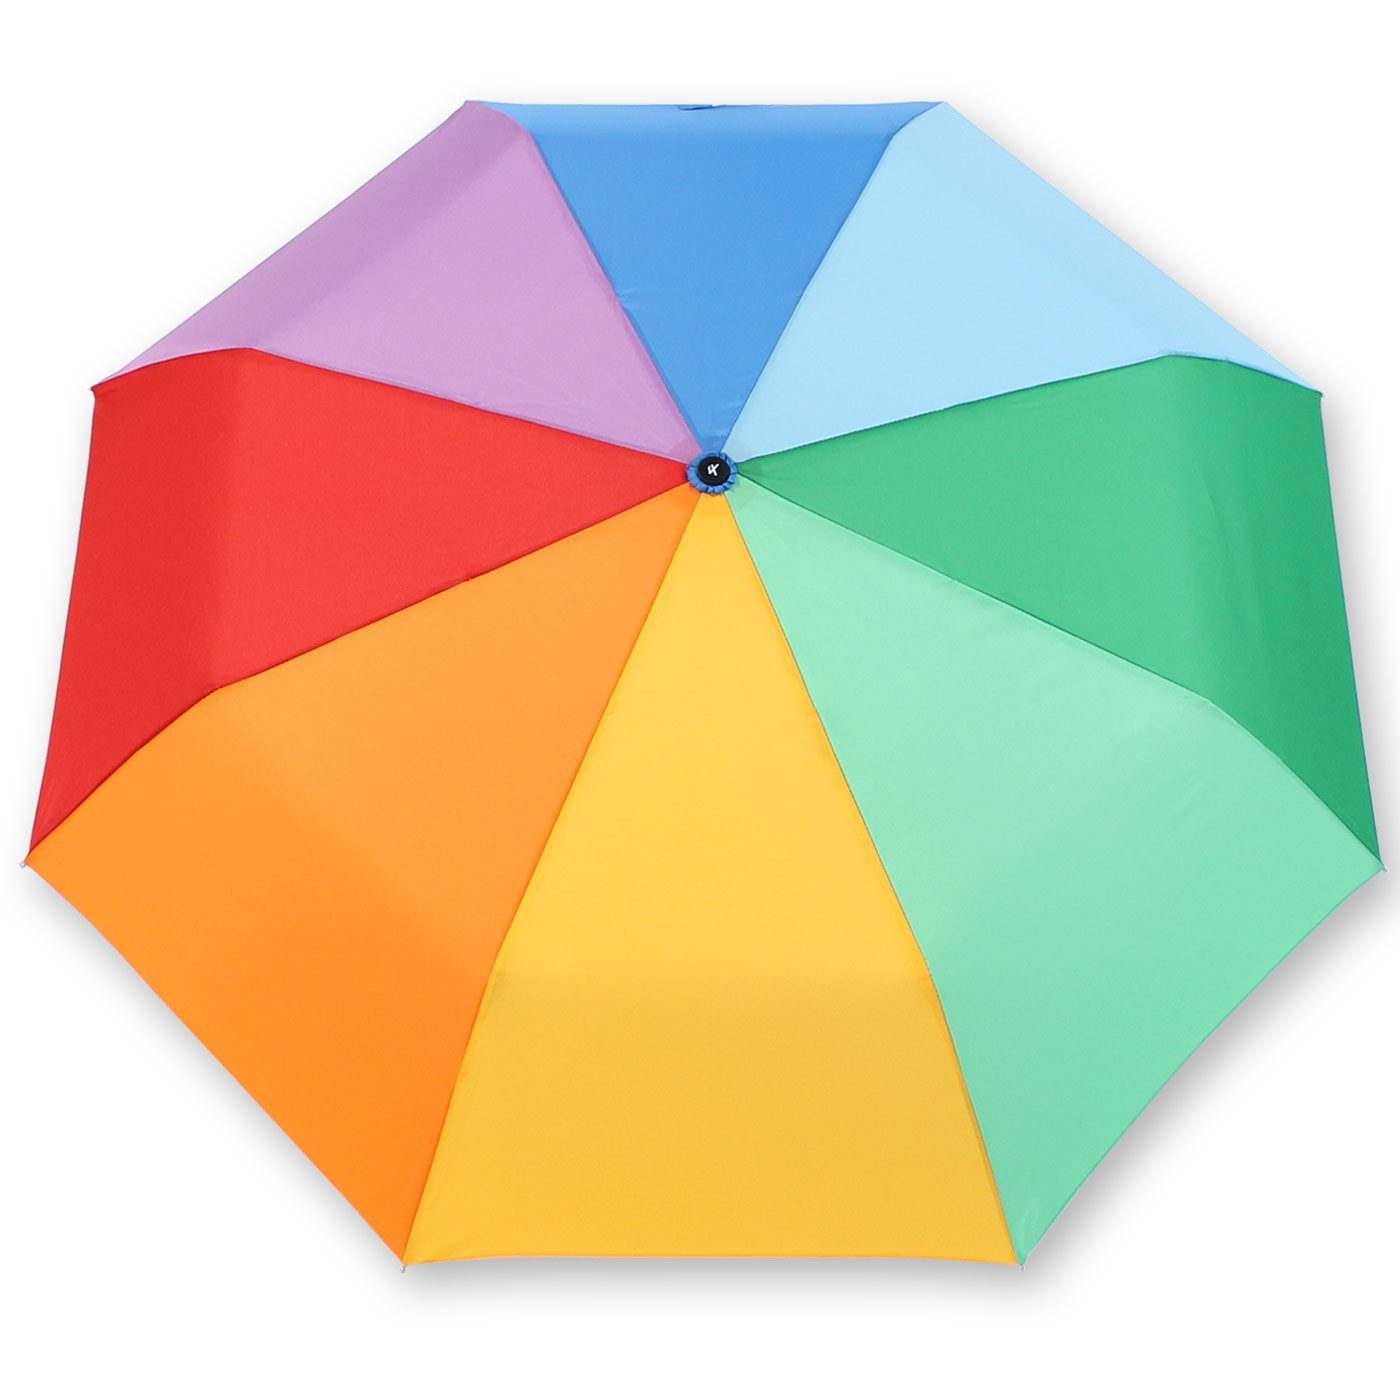 Damen Regenschirme iX-brella Taschenregenschirm Mini Regenbogenschirm leicht mit Auf-Zu-Automatik, bringt Farbe in den grauen Re